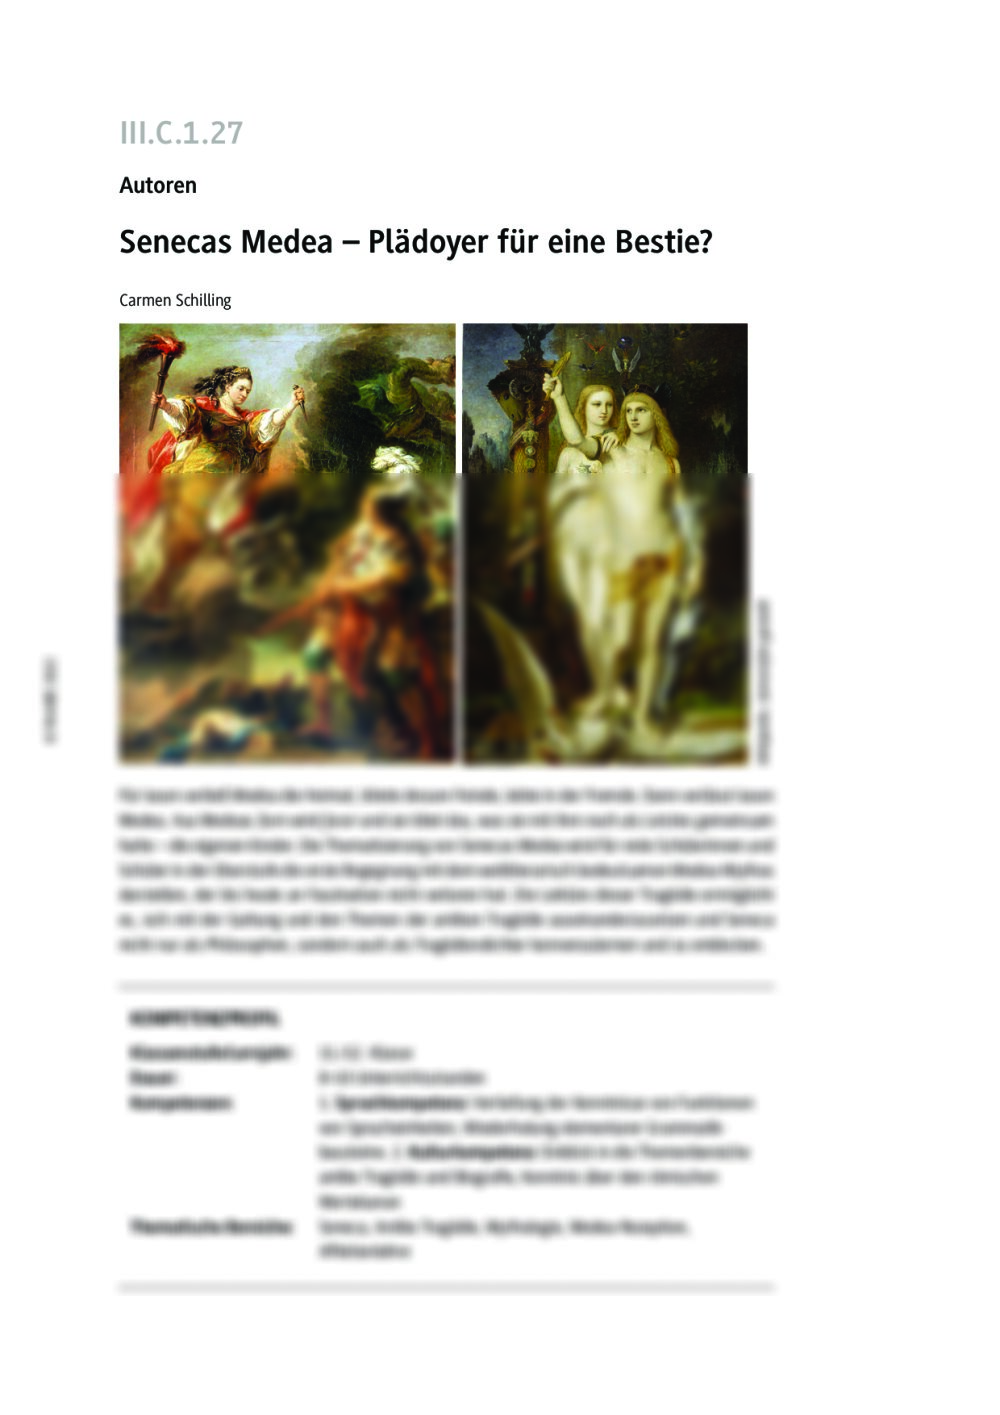 Senecas Medea - Seite 1